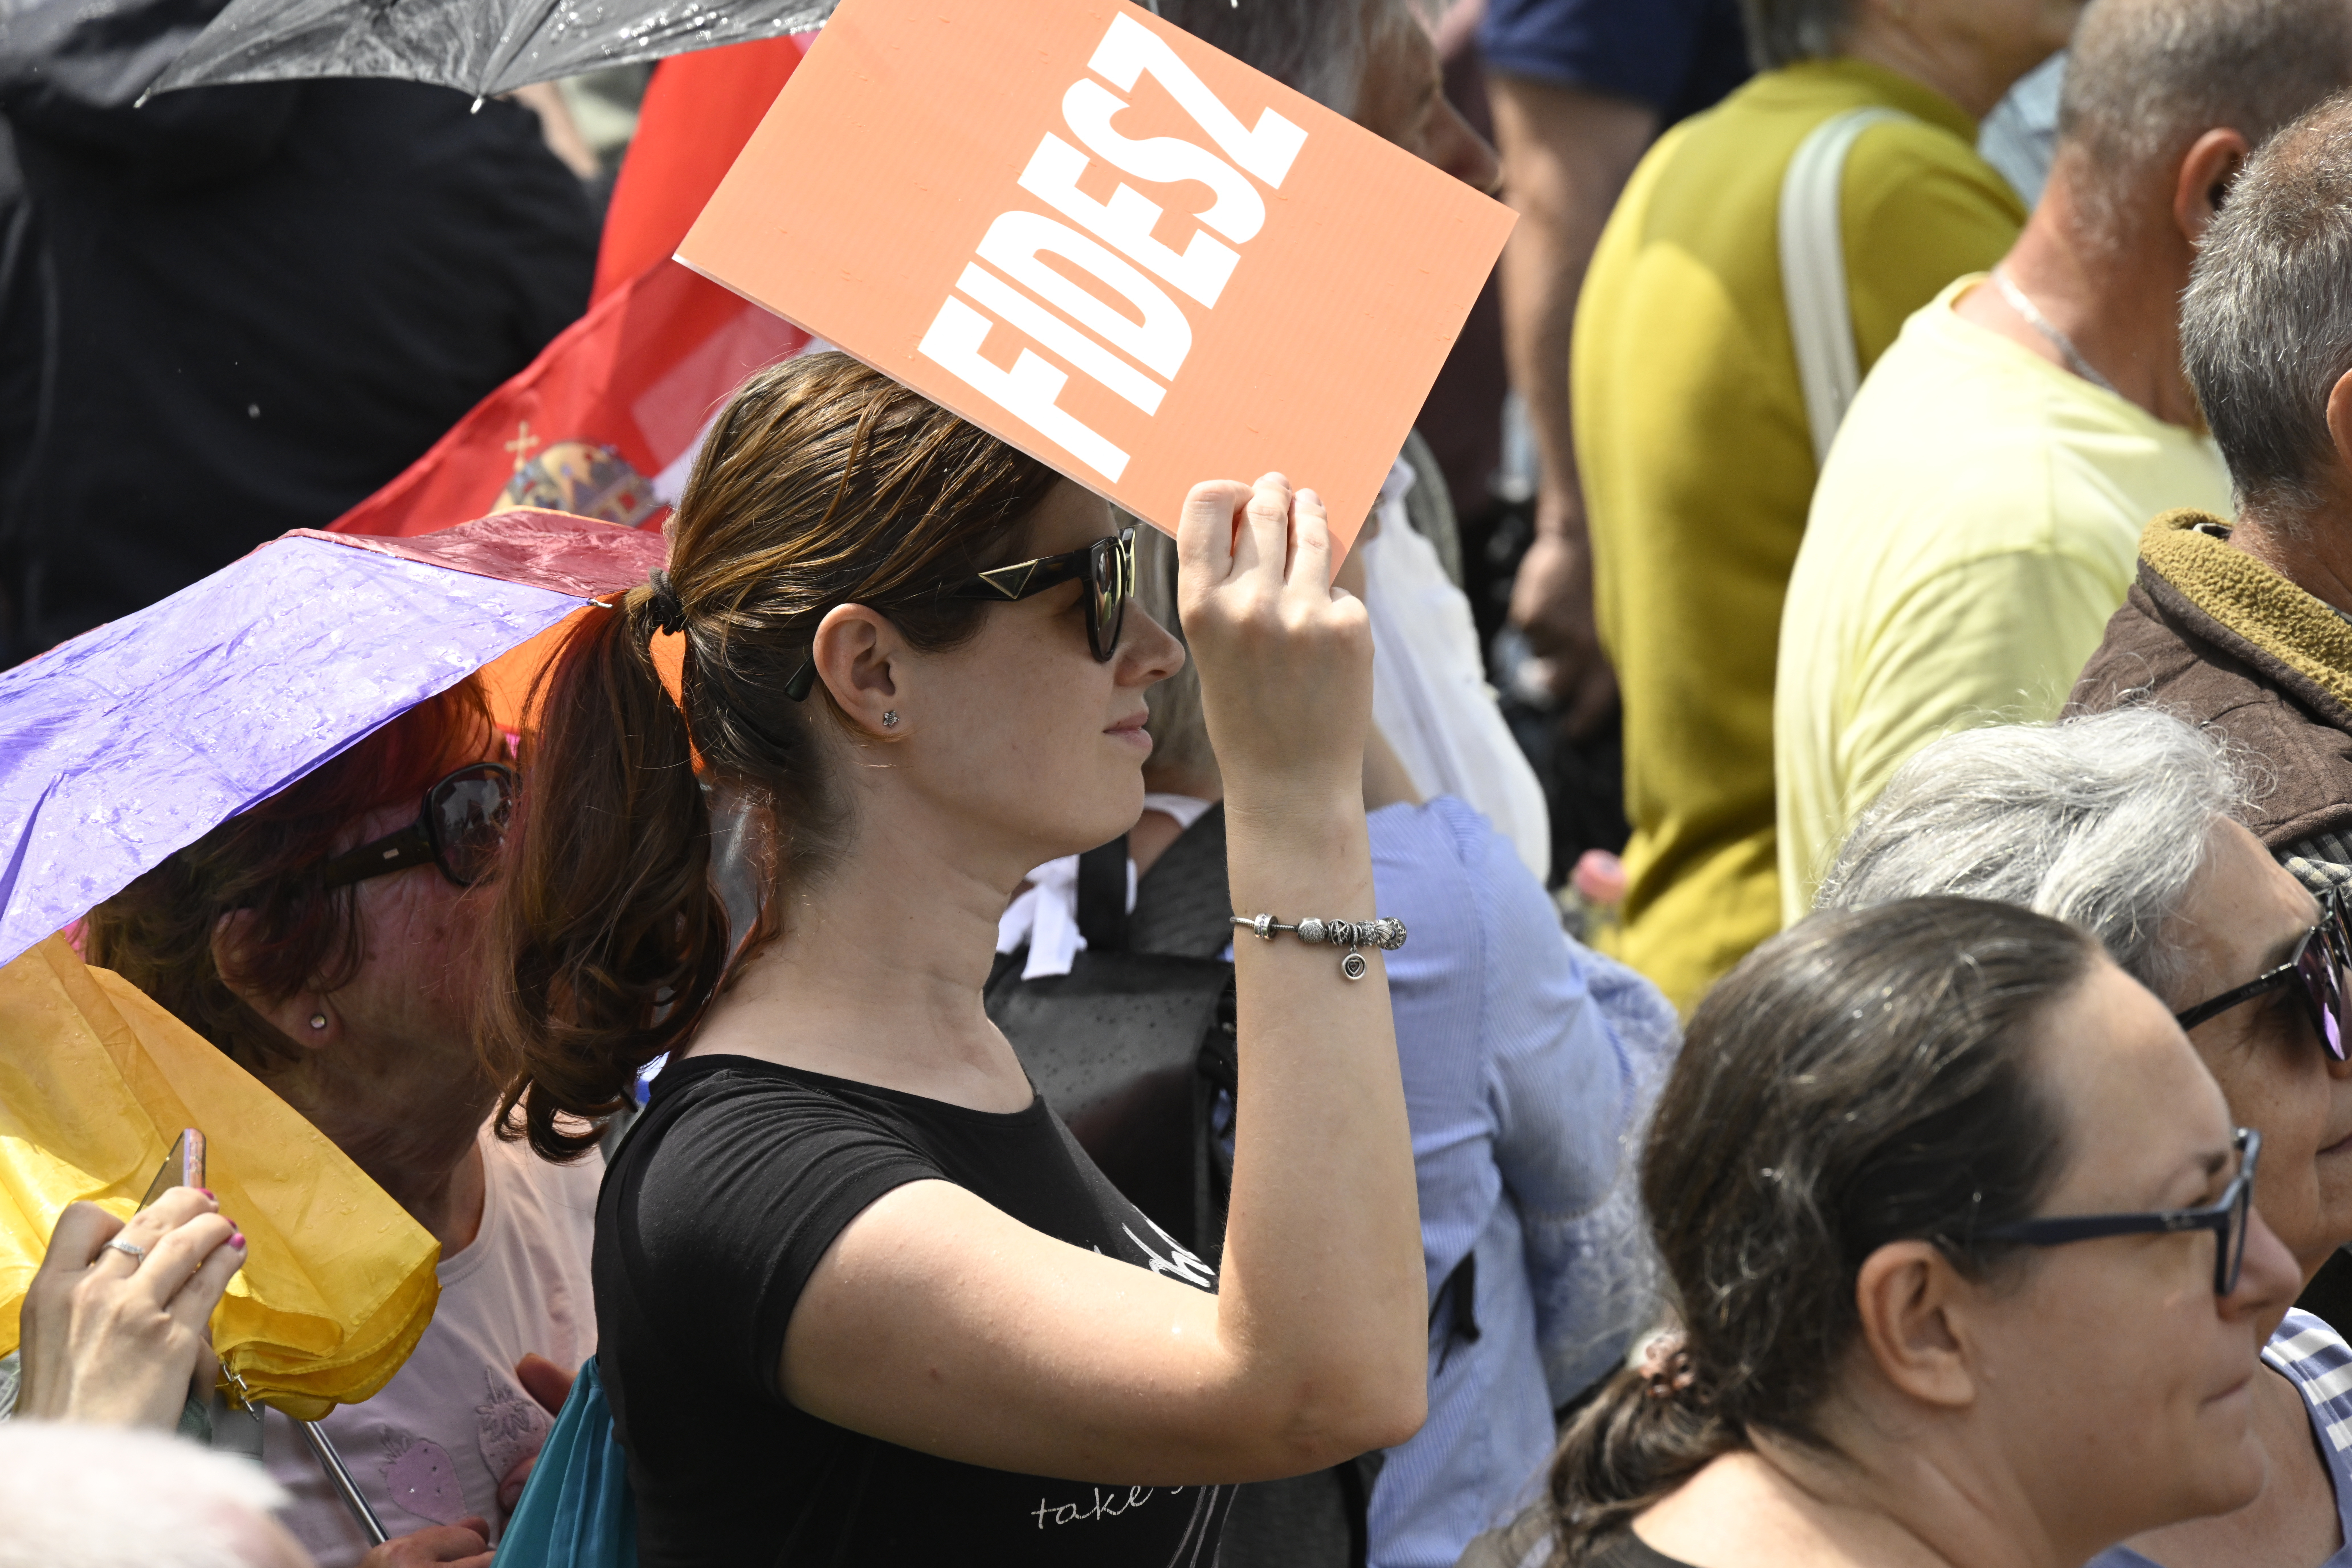 Bedurrantja a Fidesz a kampányhajrát: egymillió embert akarnak felkeresni szombaton